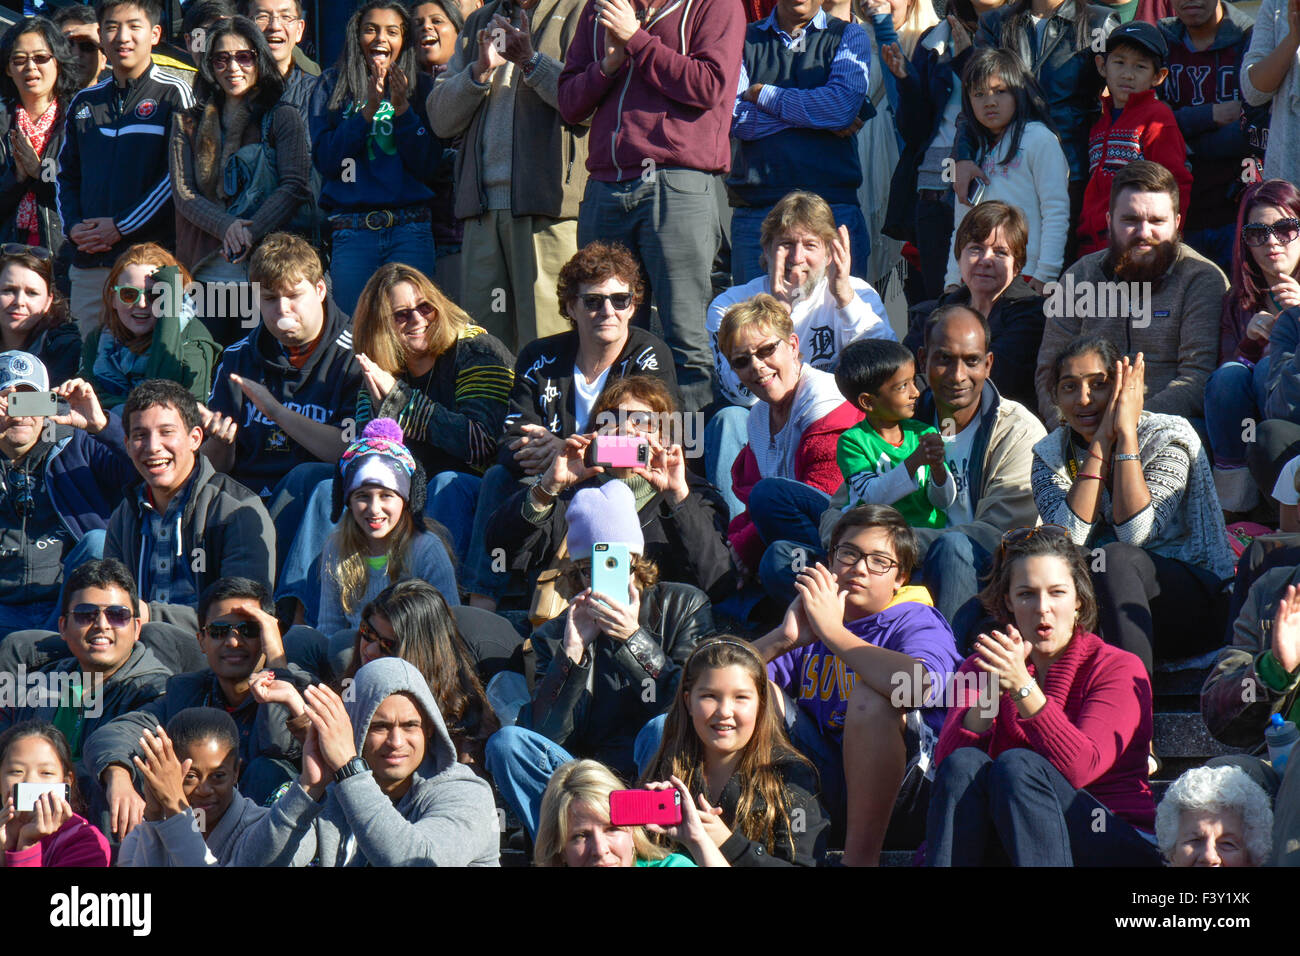 Vielzahl von unterschiedlichen Menschen in den USA sitzen auf der Tribüne zu reagieren und ein Ereignis zu beobachten Stockfoto